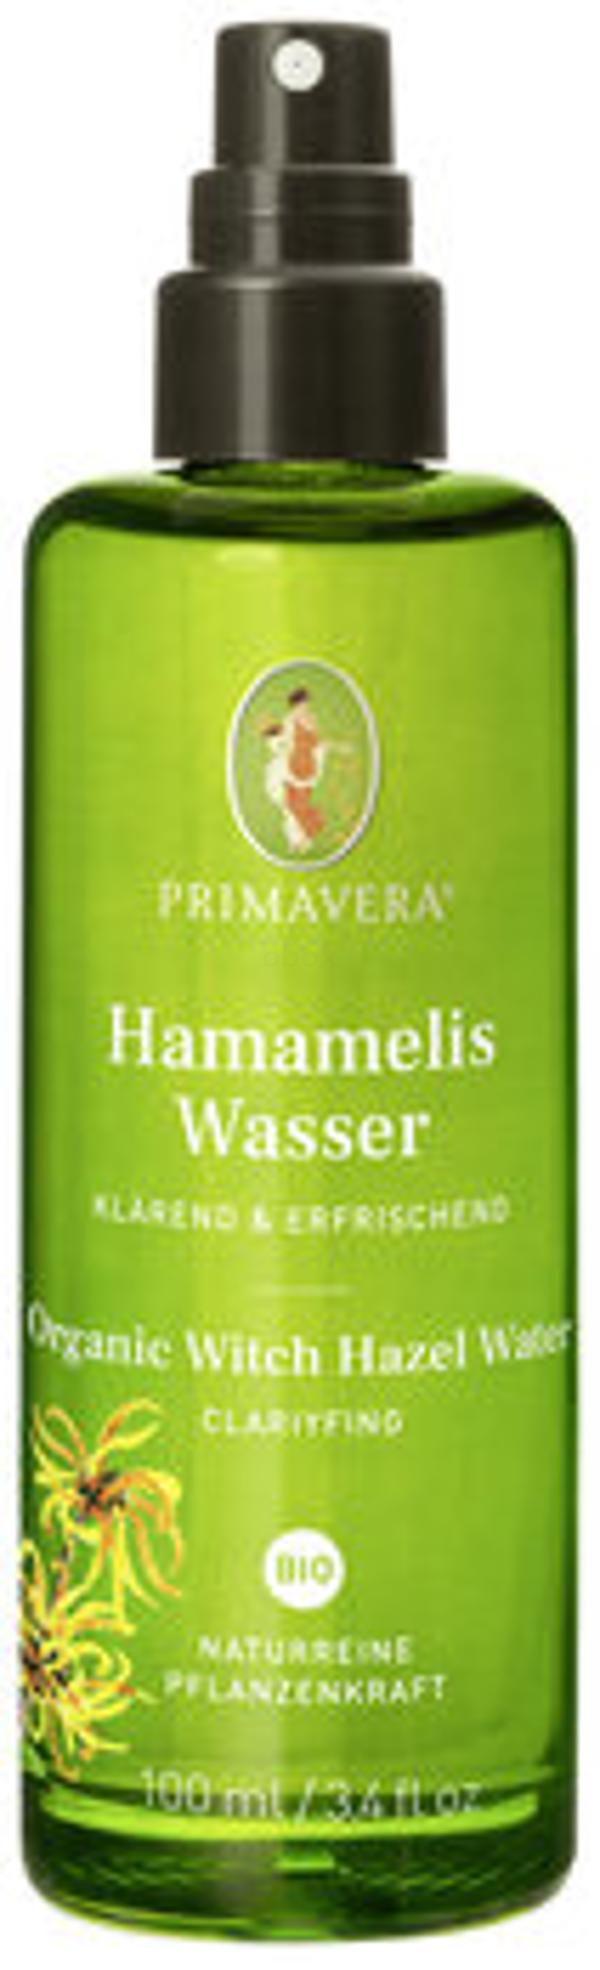 Produktfoto zu Hamameliswasser 100 ml